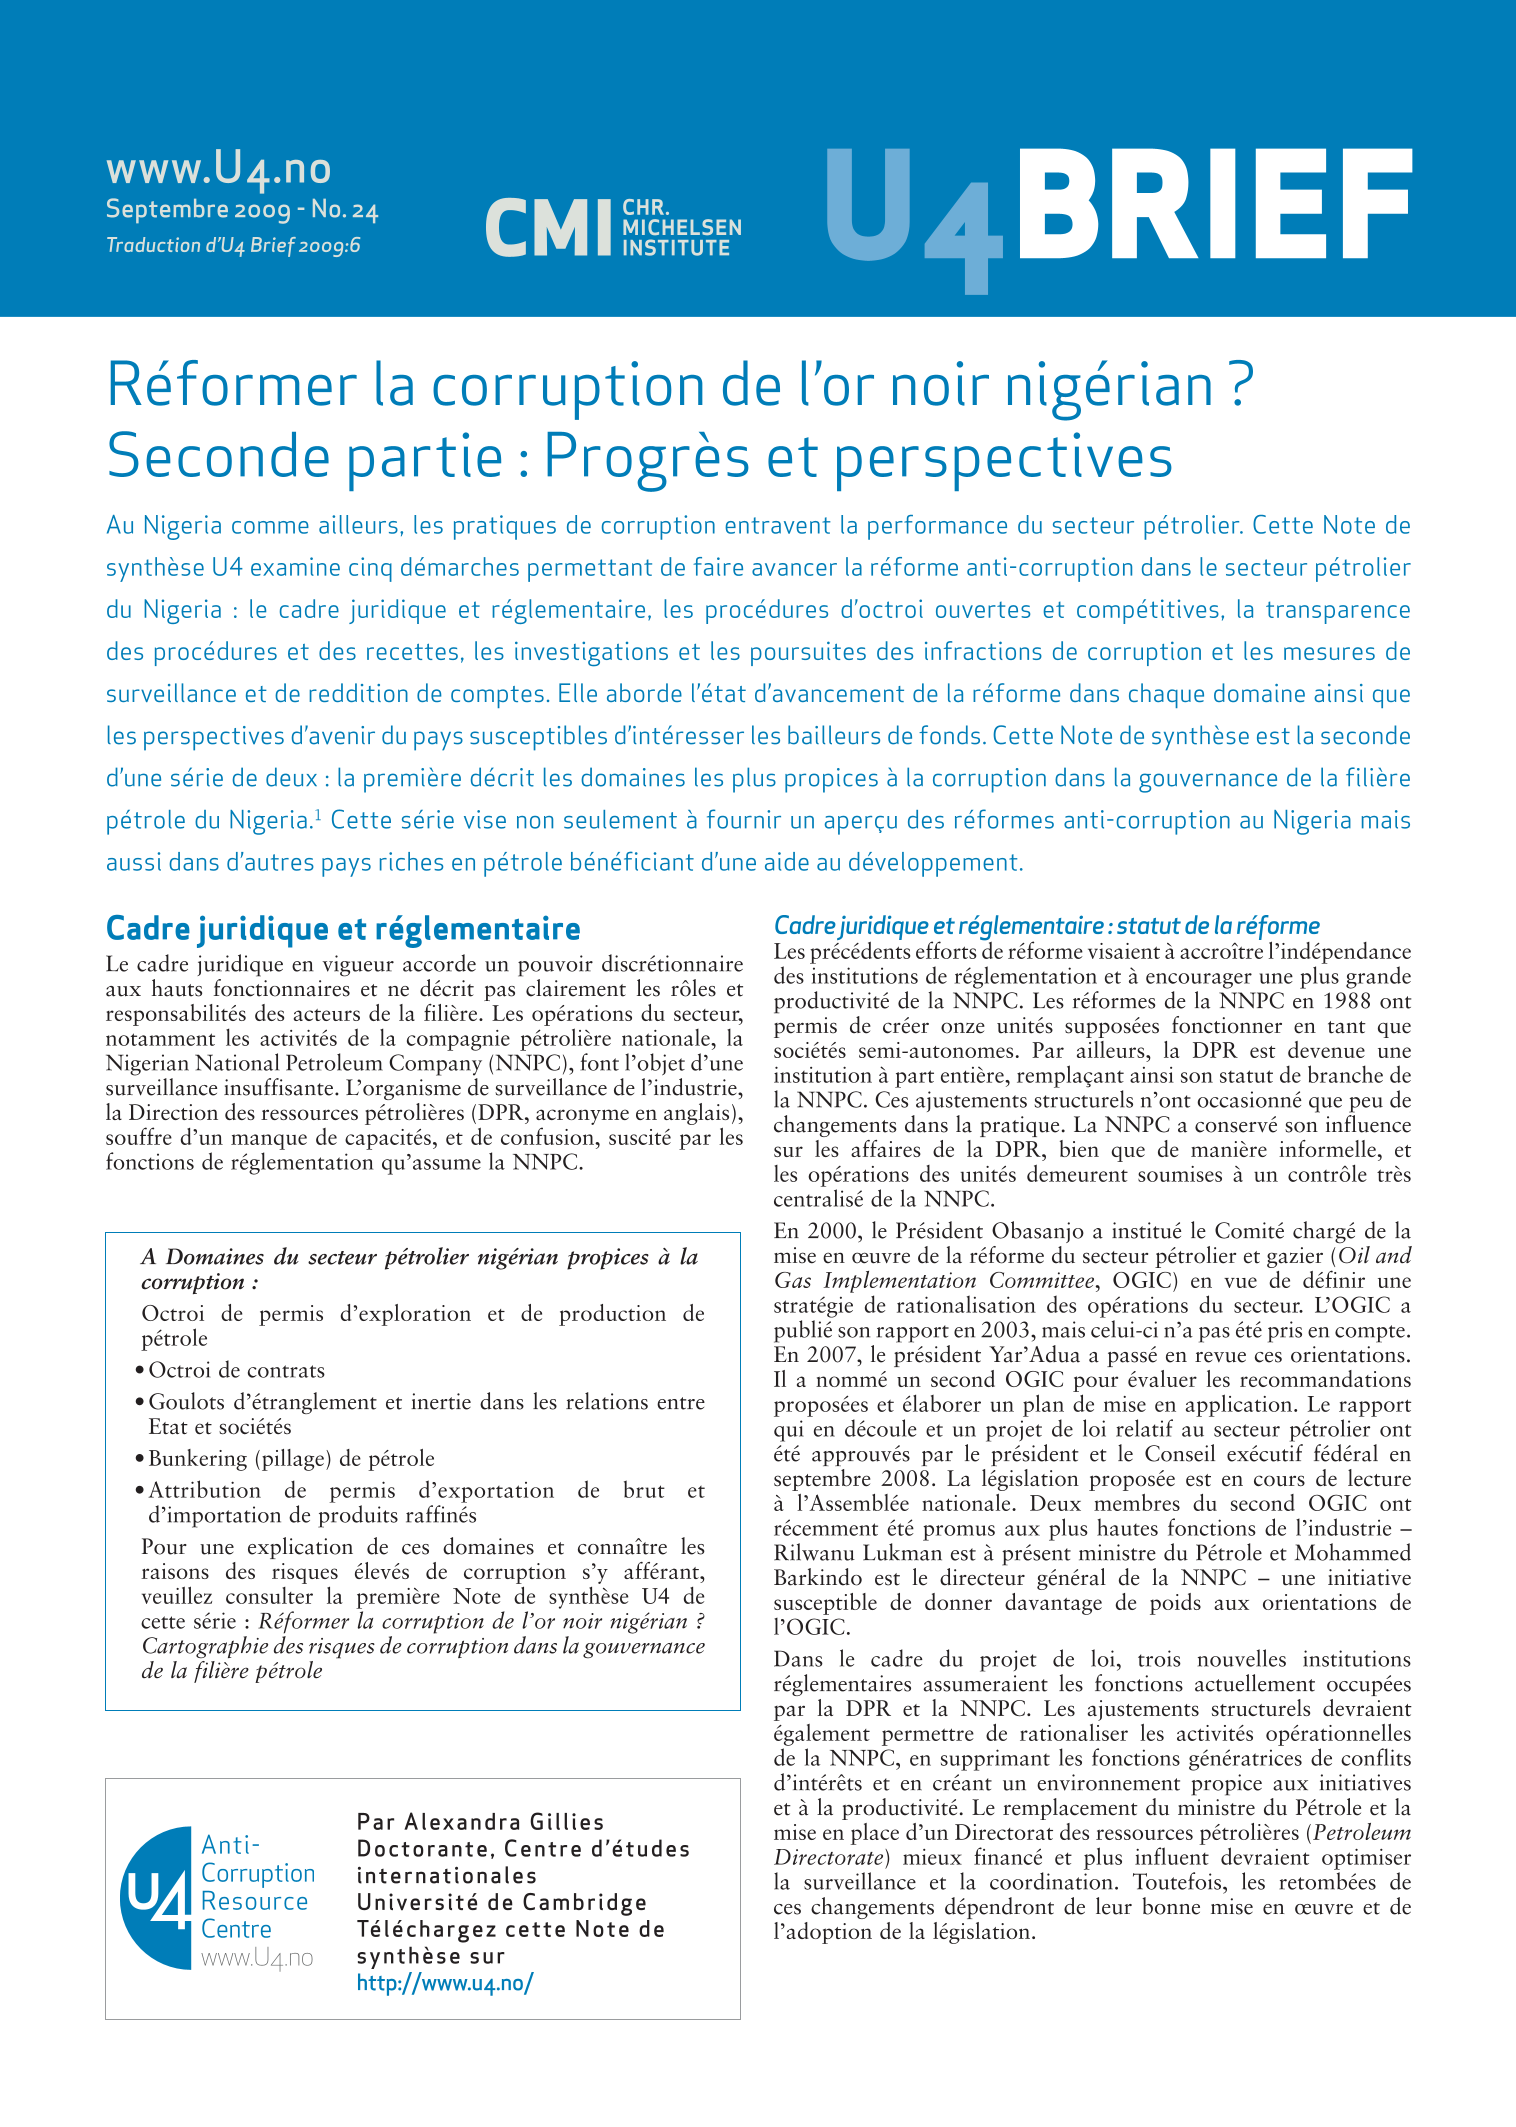 Réformer la corruption de l'or noir nigérian? Seconde partie: Progrès et perspectives